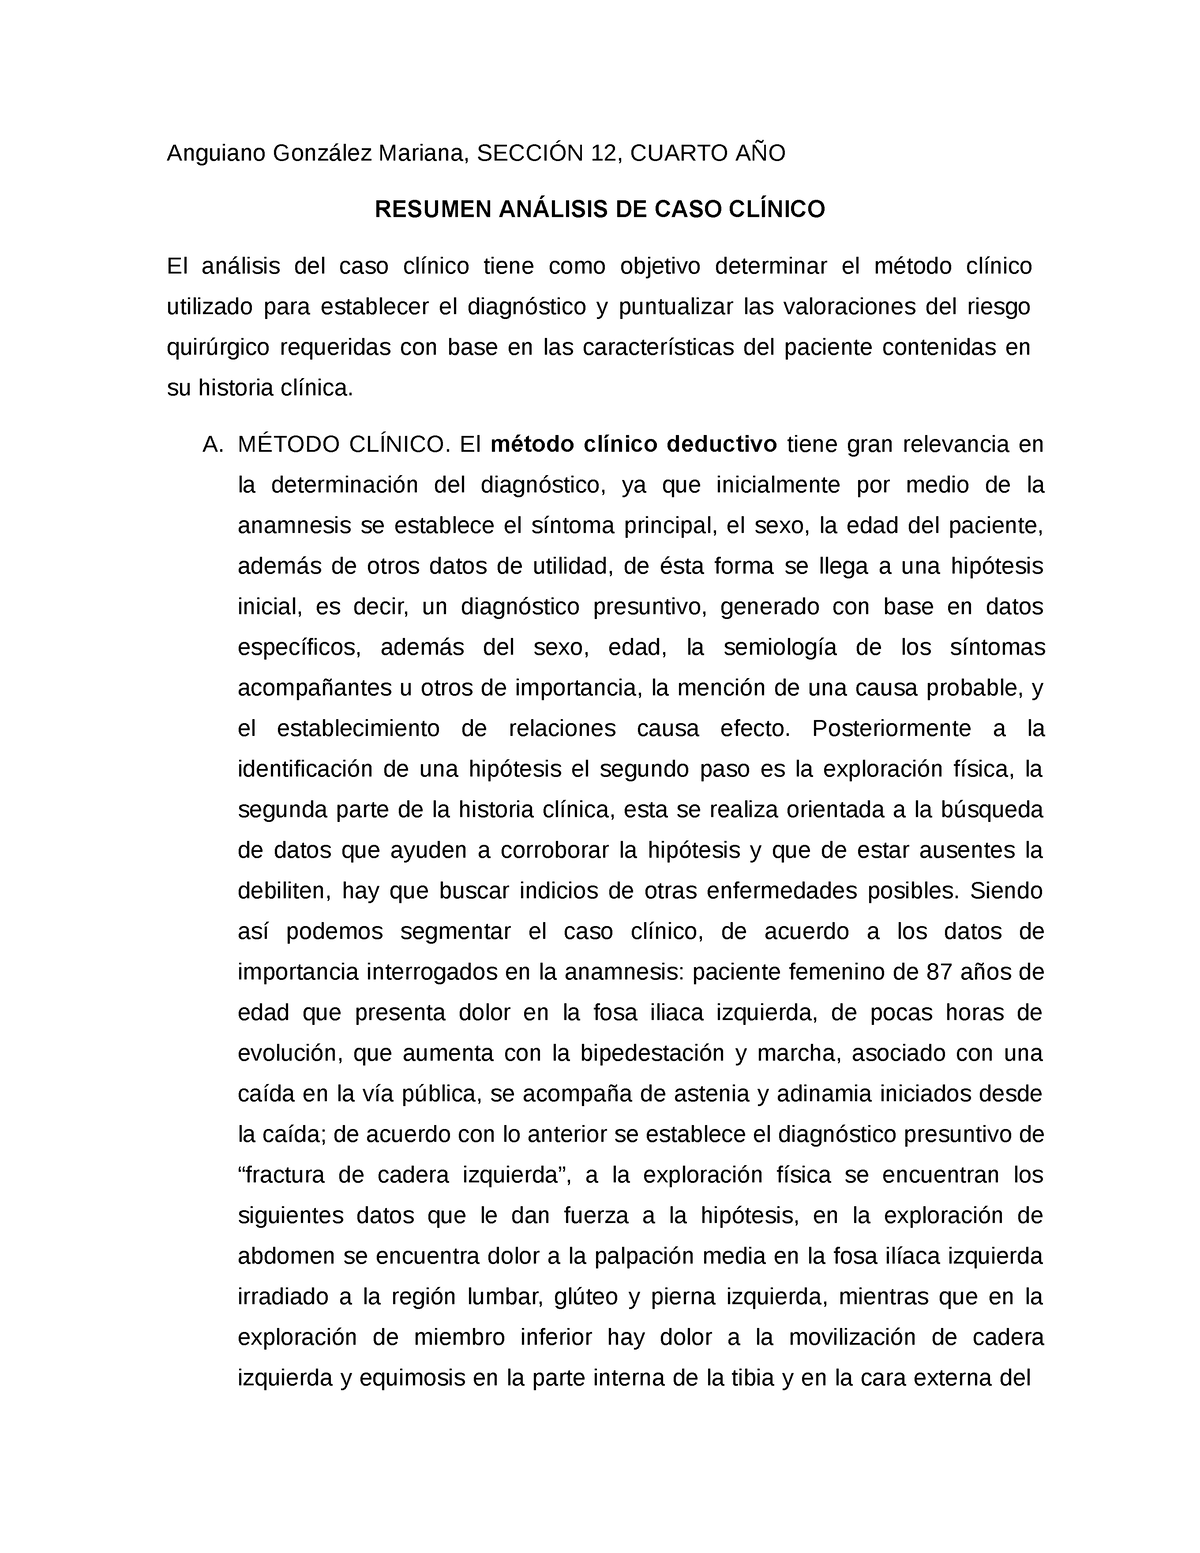 Resumen análisis de caso clínico - Anguiano González Mariana, SECCIÓN ...